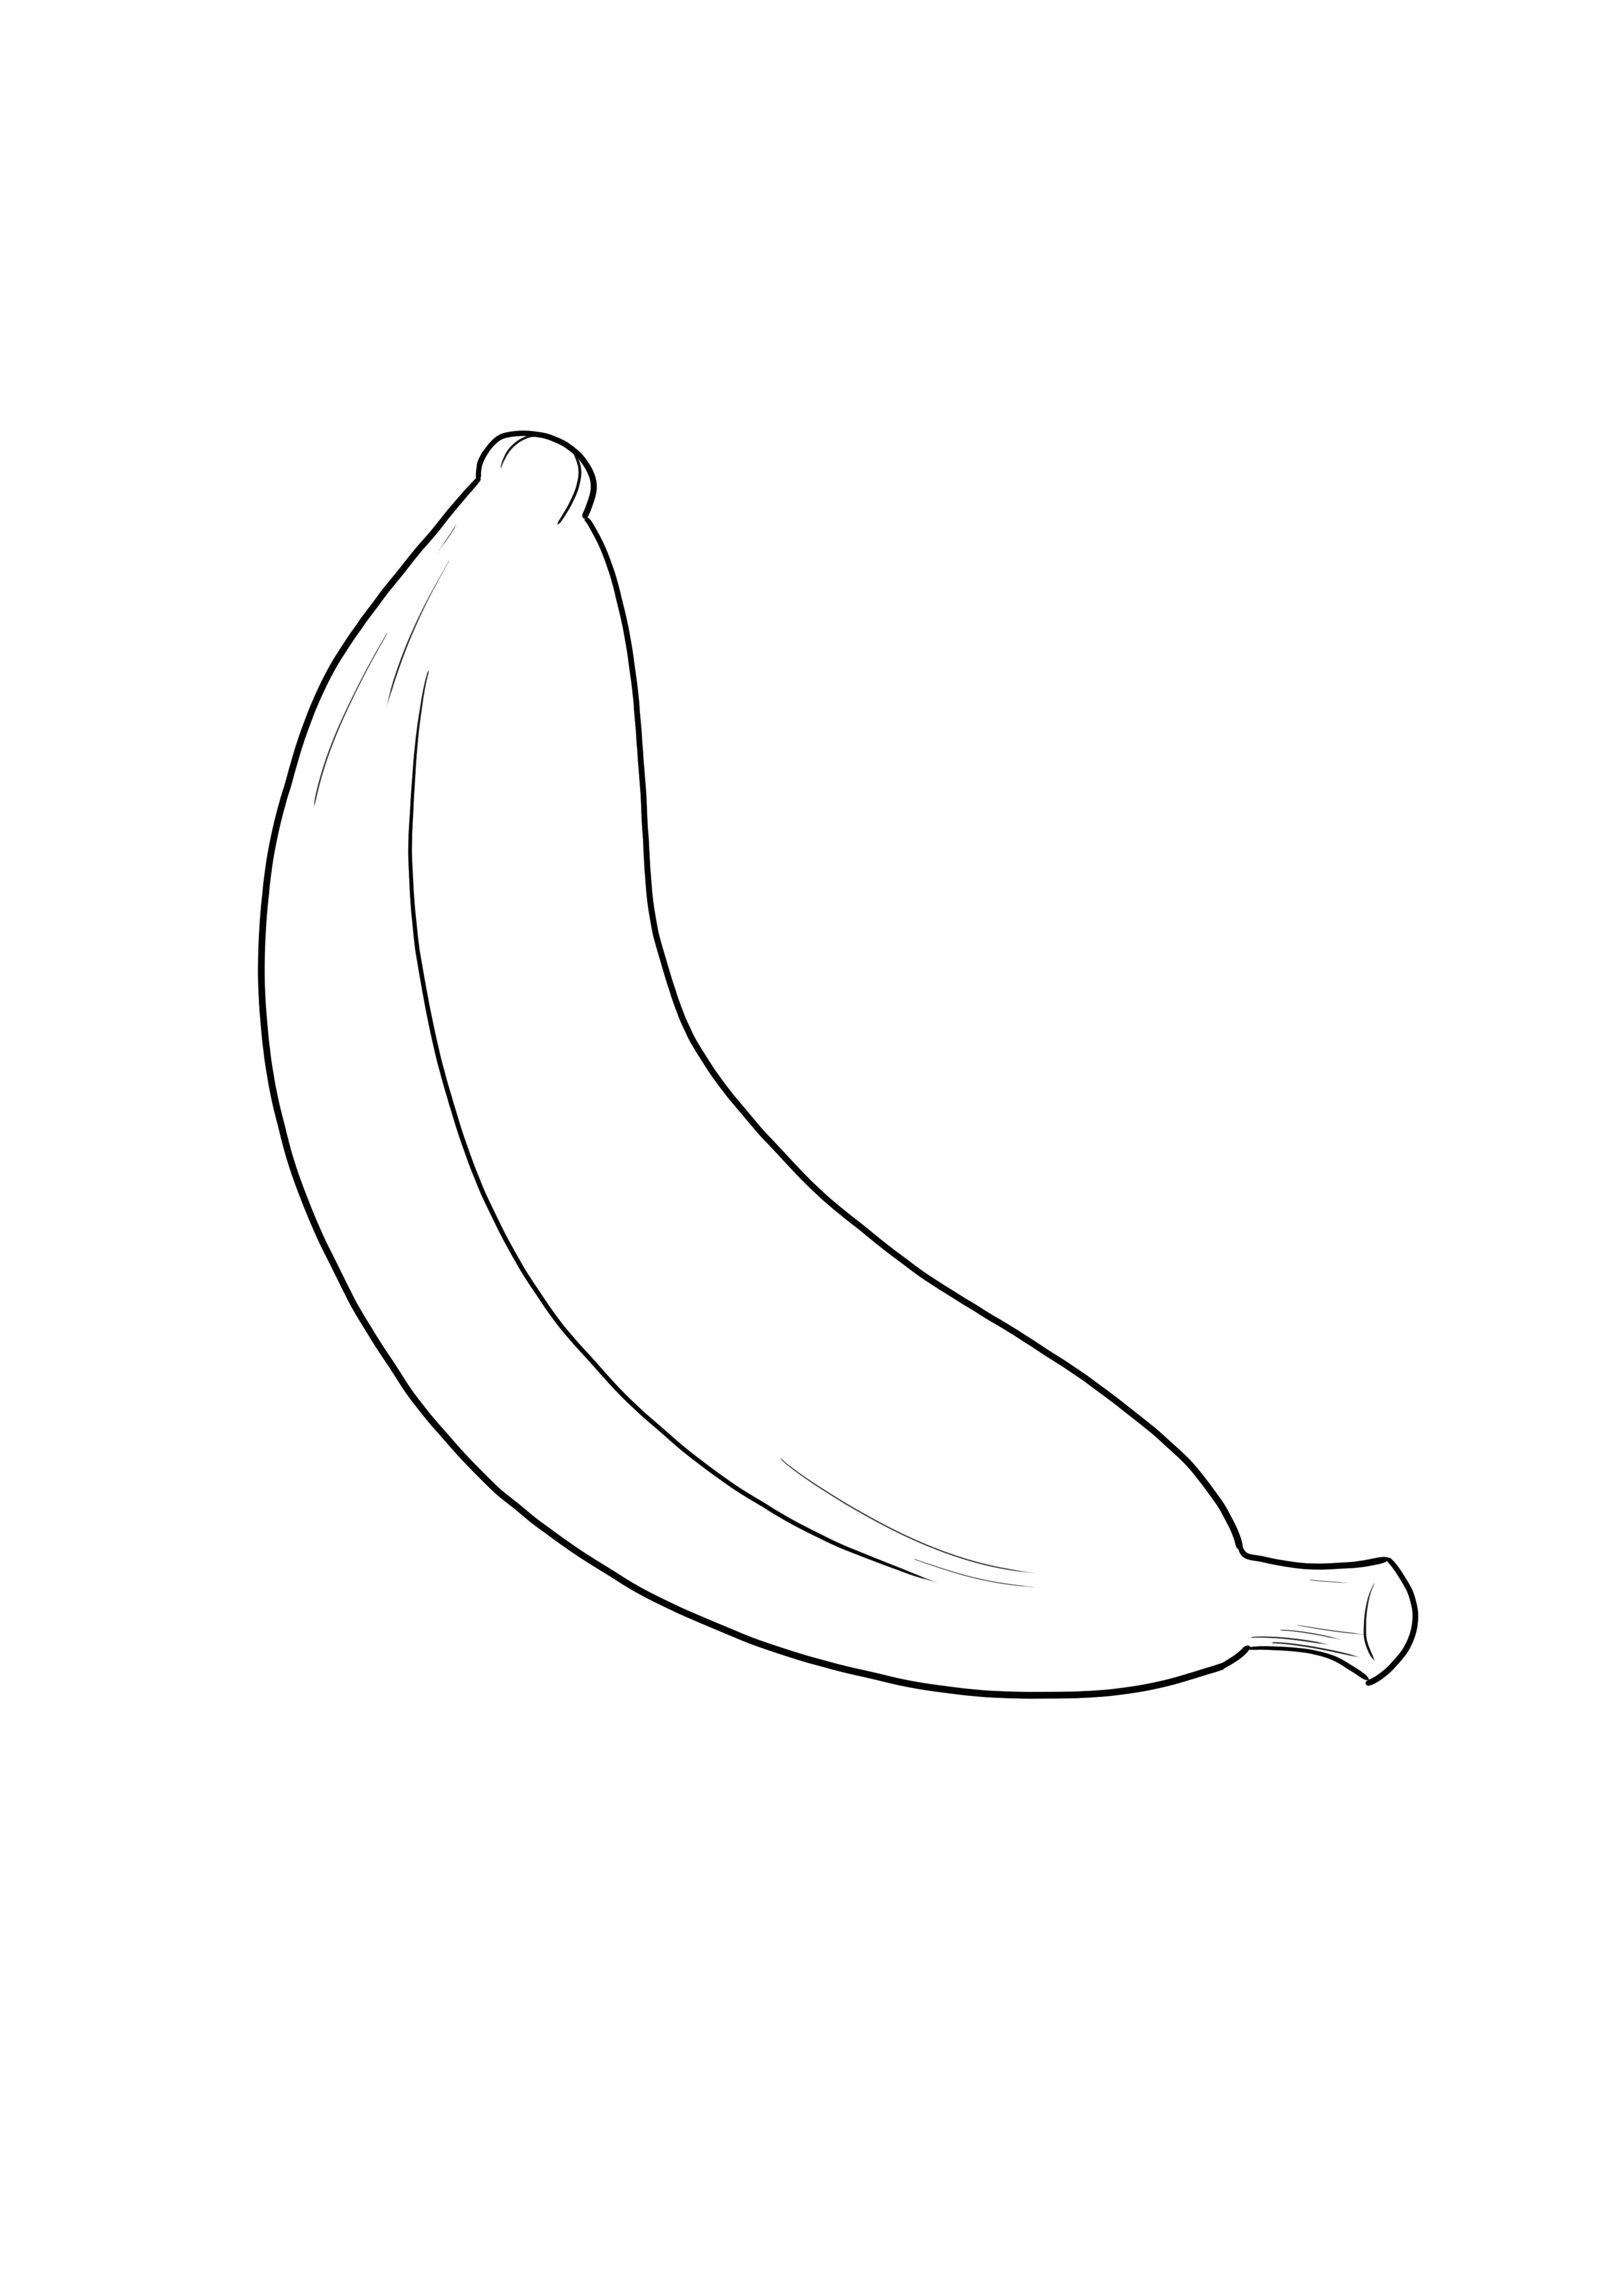 Facile da colorare l'immagine della banana gratuitamente per i bambini di tutte le età